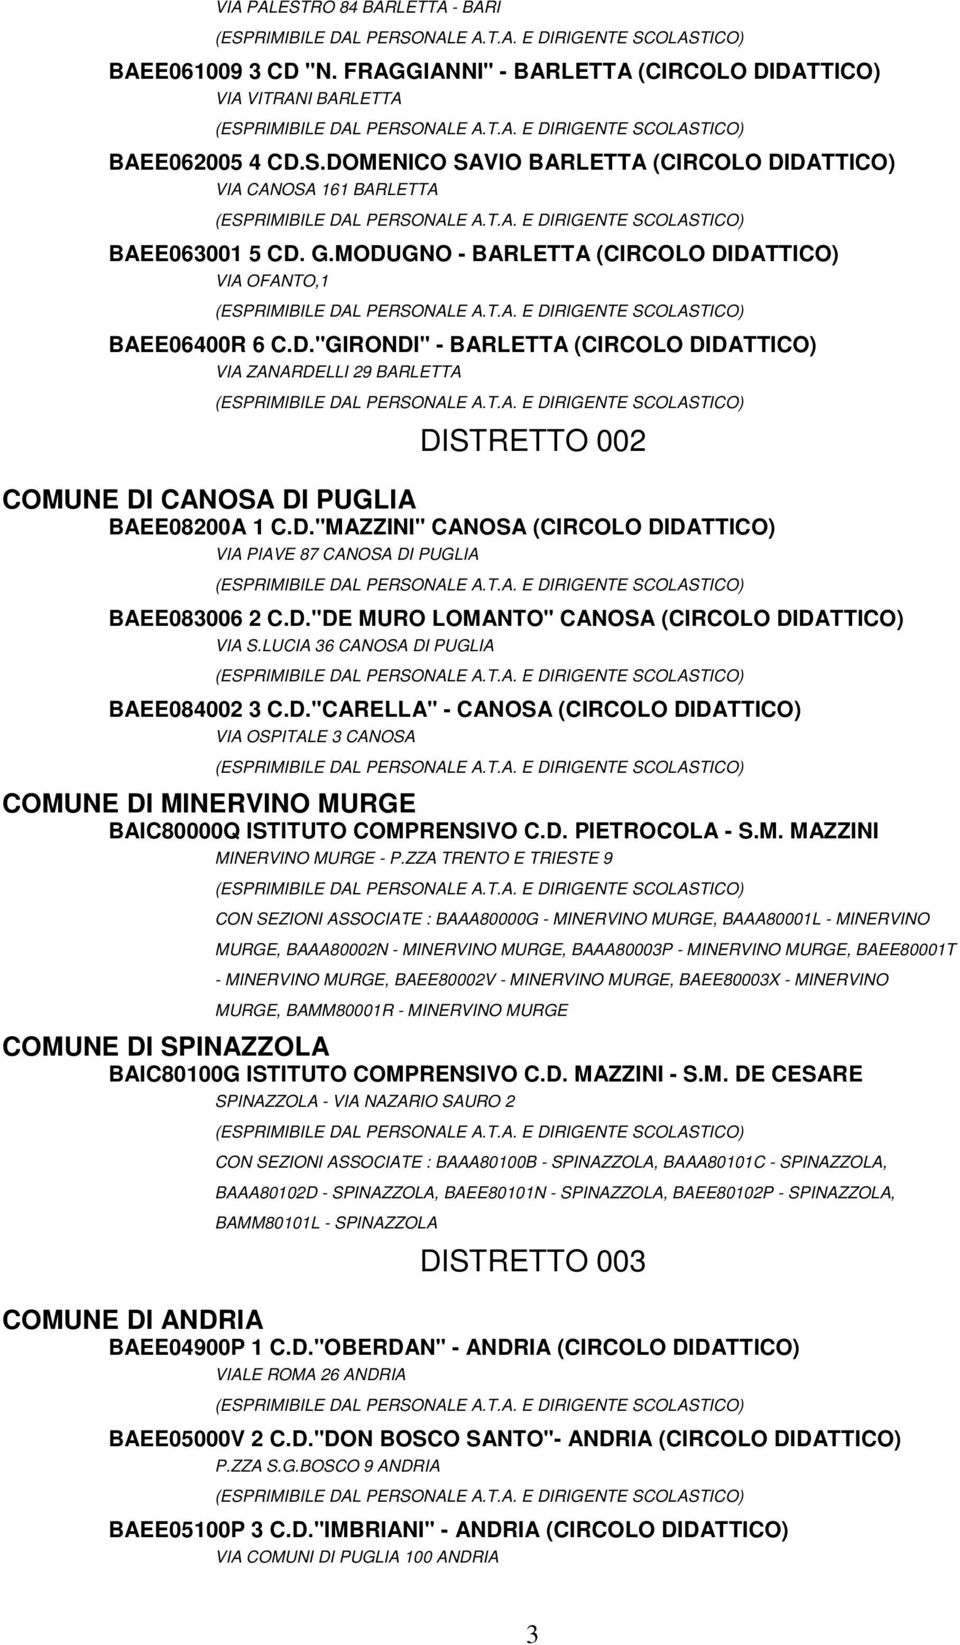 D."DE MURO LOMANTO" CANOSA (CIRCOLO DIDATTICO) VIA S.LUCIA 36 CANOSA DI PUGLIA BAEE084002 3 C.D."CARELLA" - CANOSA (CIRCOLO DIDATTICO) VIA OSPITALE 3 CANOSA COMUNE DI MINERVINO MURGE BAIC80000Q ISTITUTO COMPRENSIVO C.